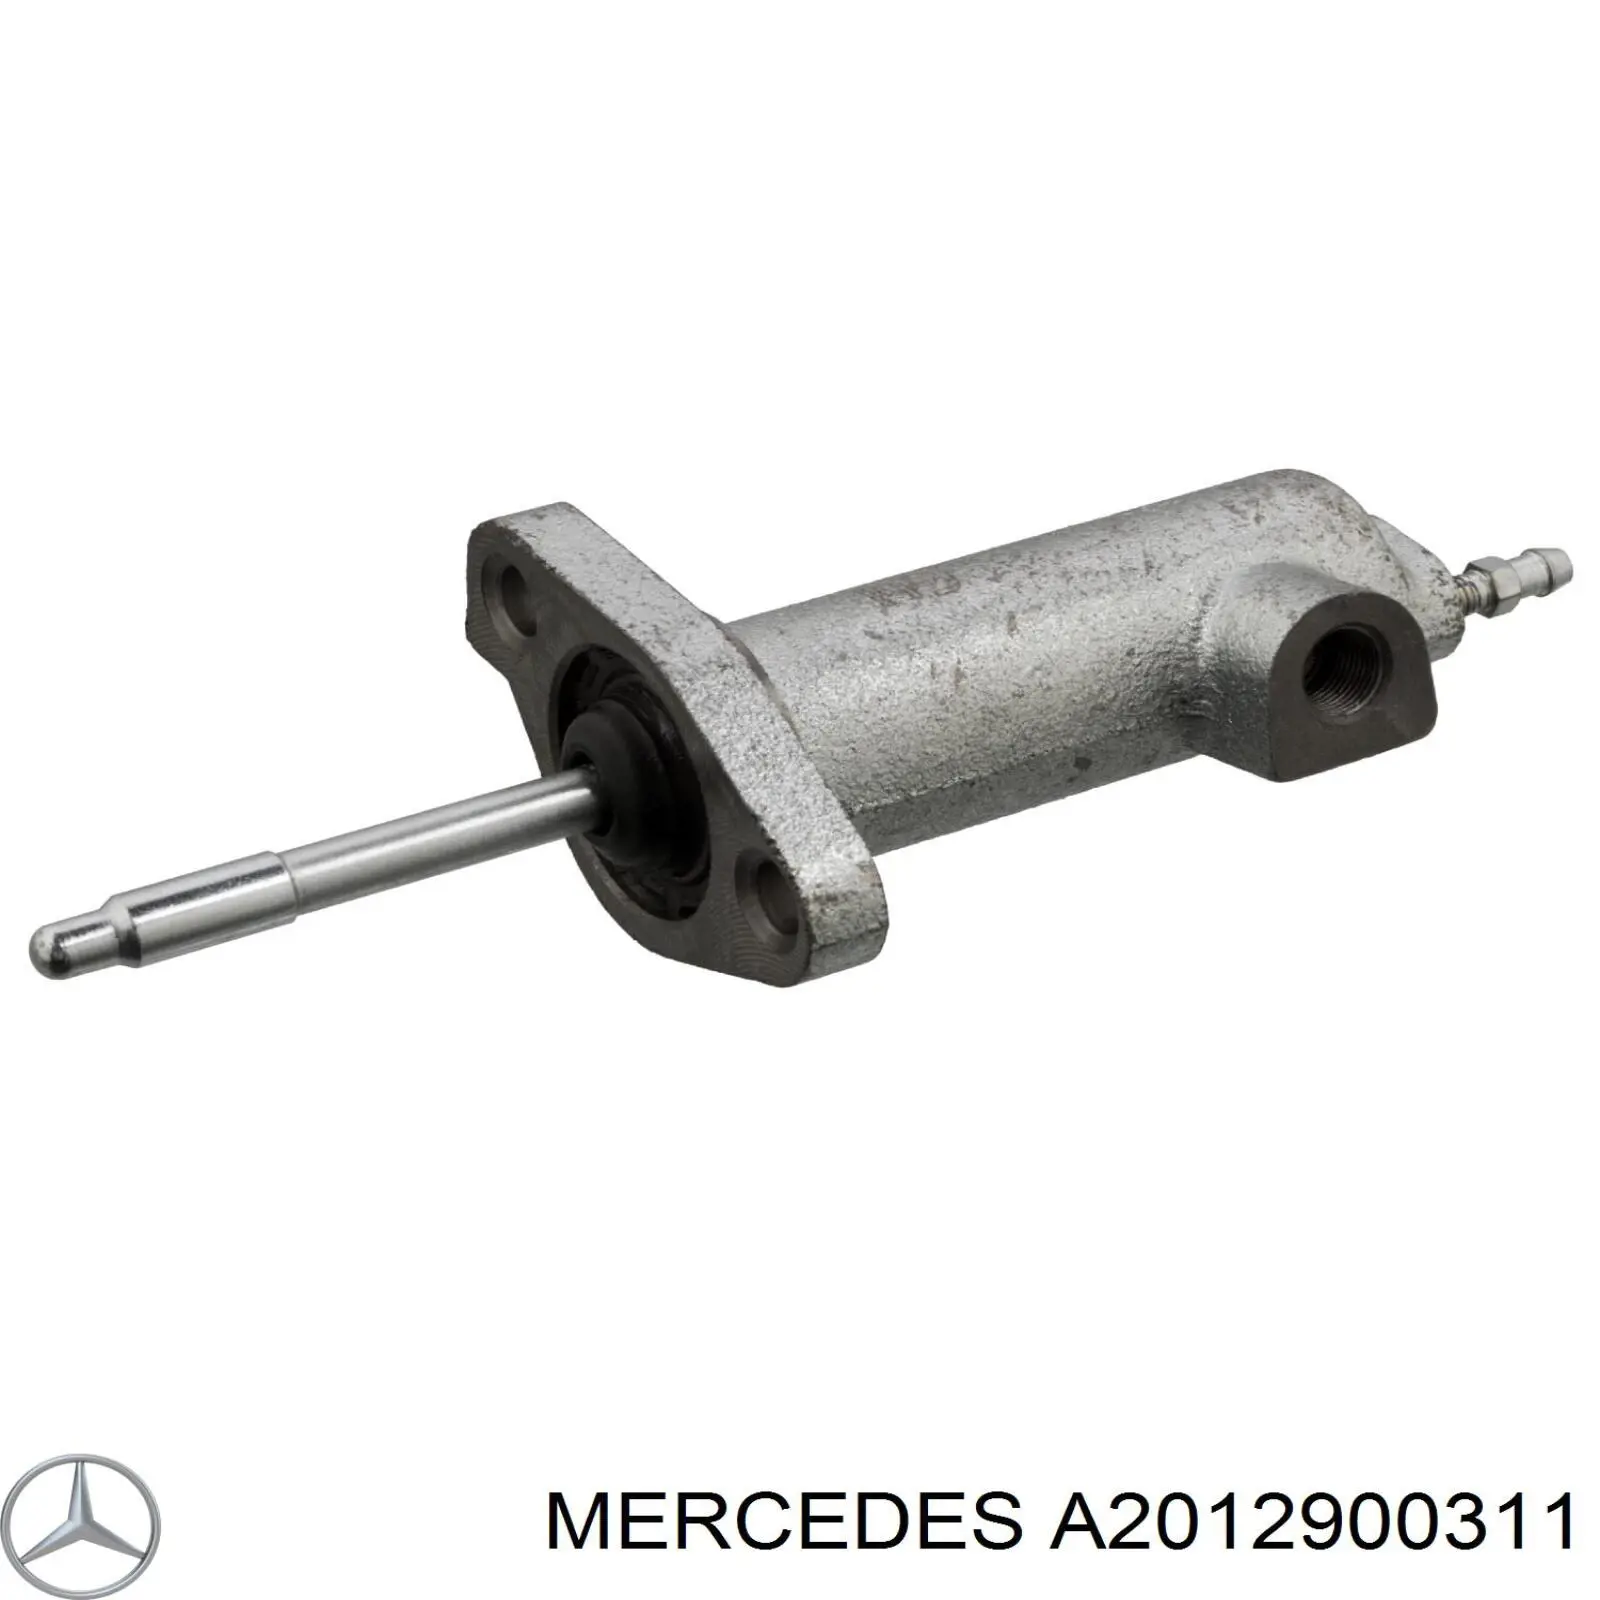 Цилиндр сцепления рабочий Mercedes A2012900311